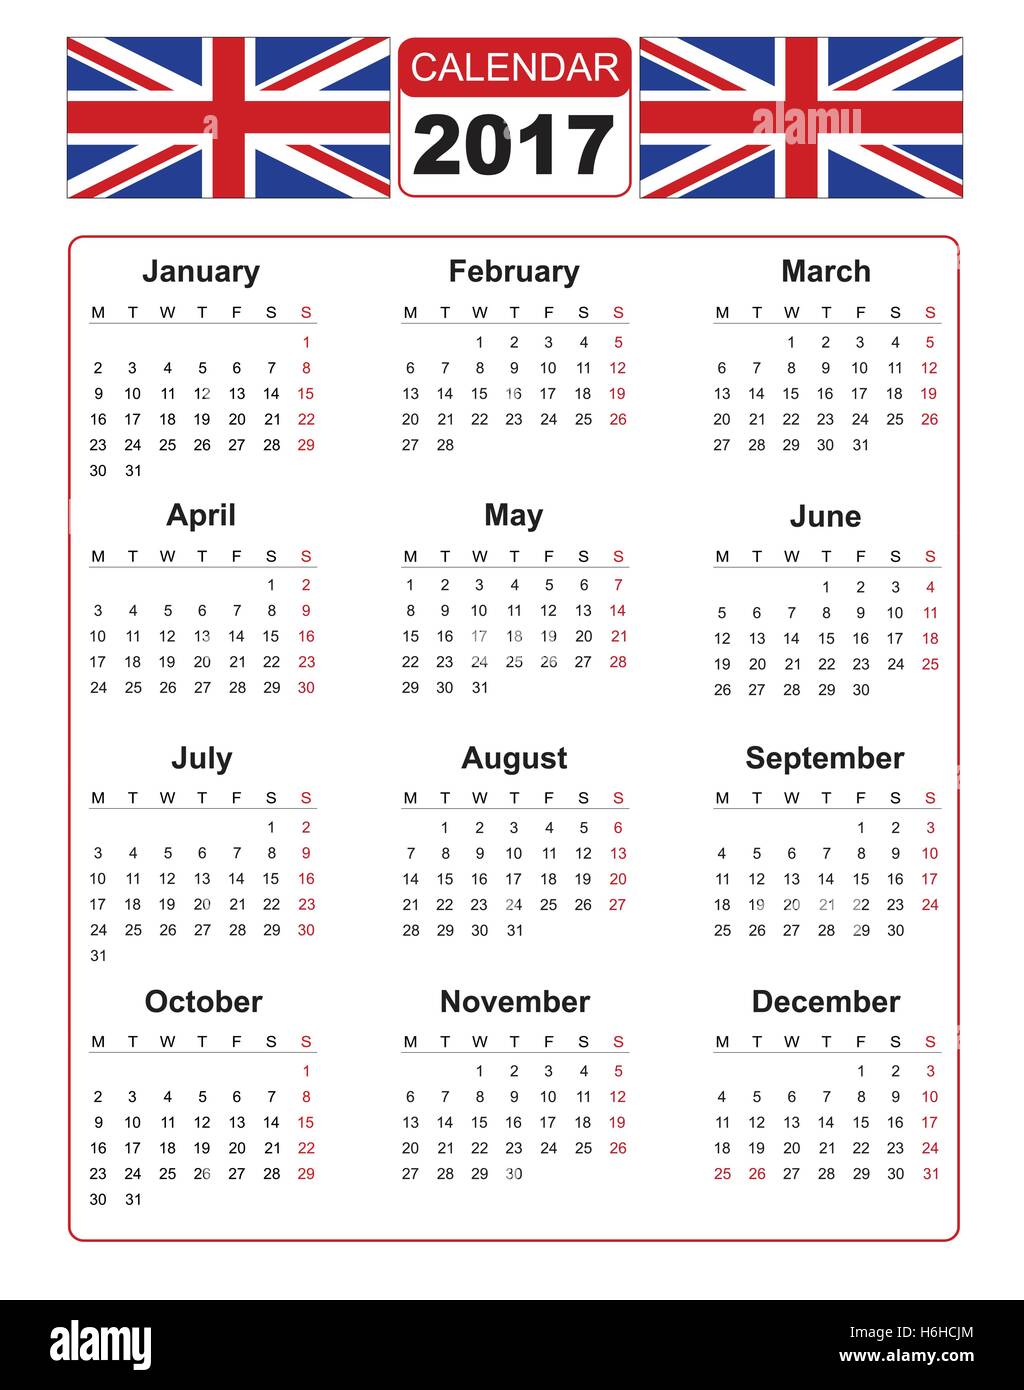 Kalender für das Jahr 2017 auf weißem Hintergrund mit zwei Vektor-Bild der united Kindom Flagge. Vektor-EPS10. Stock Vektor